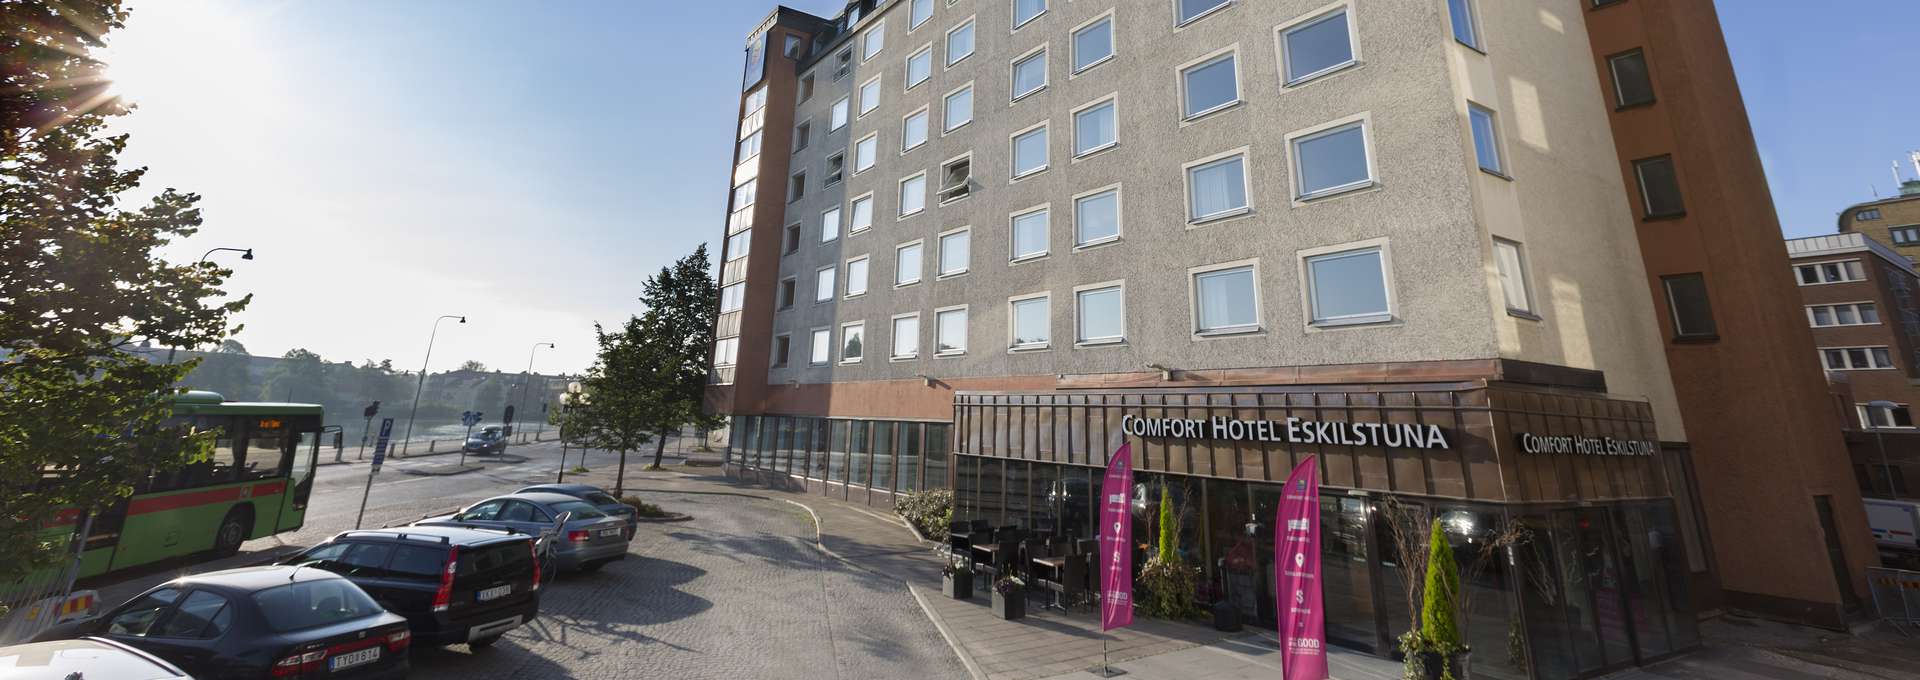 Hela Comfort Hotel och parkerings plats en solig vårdag 